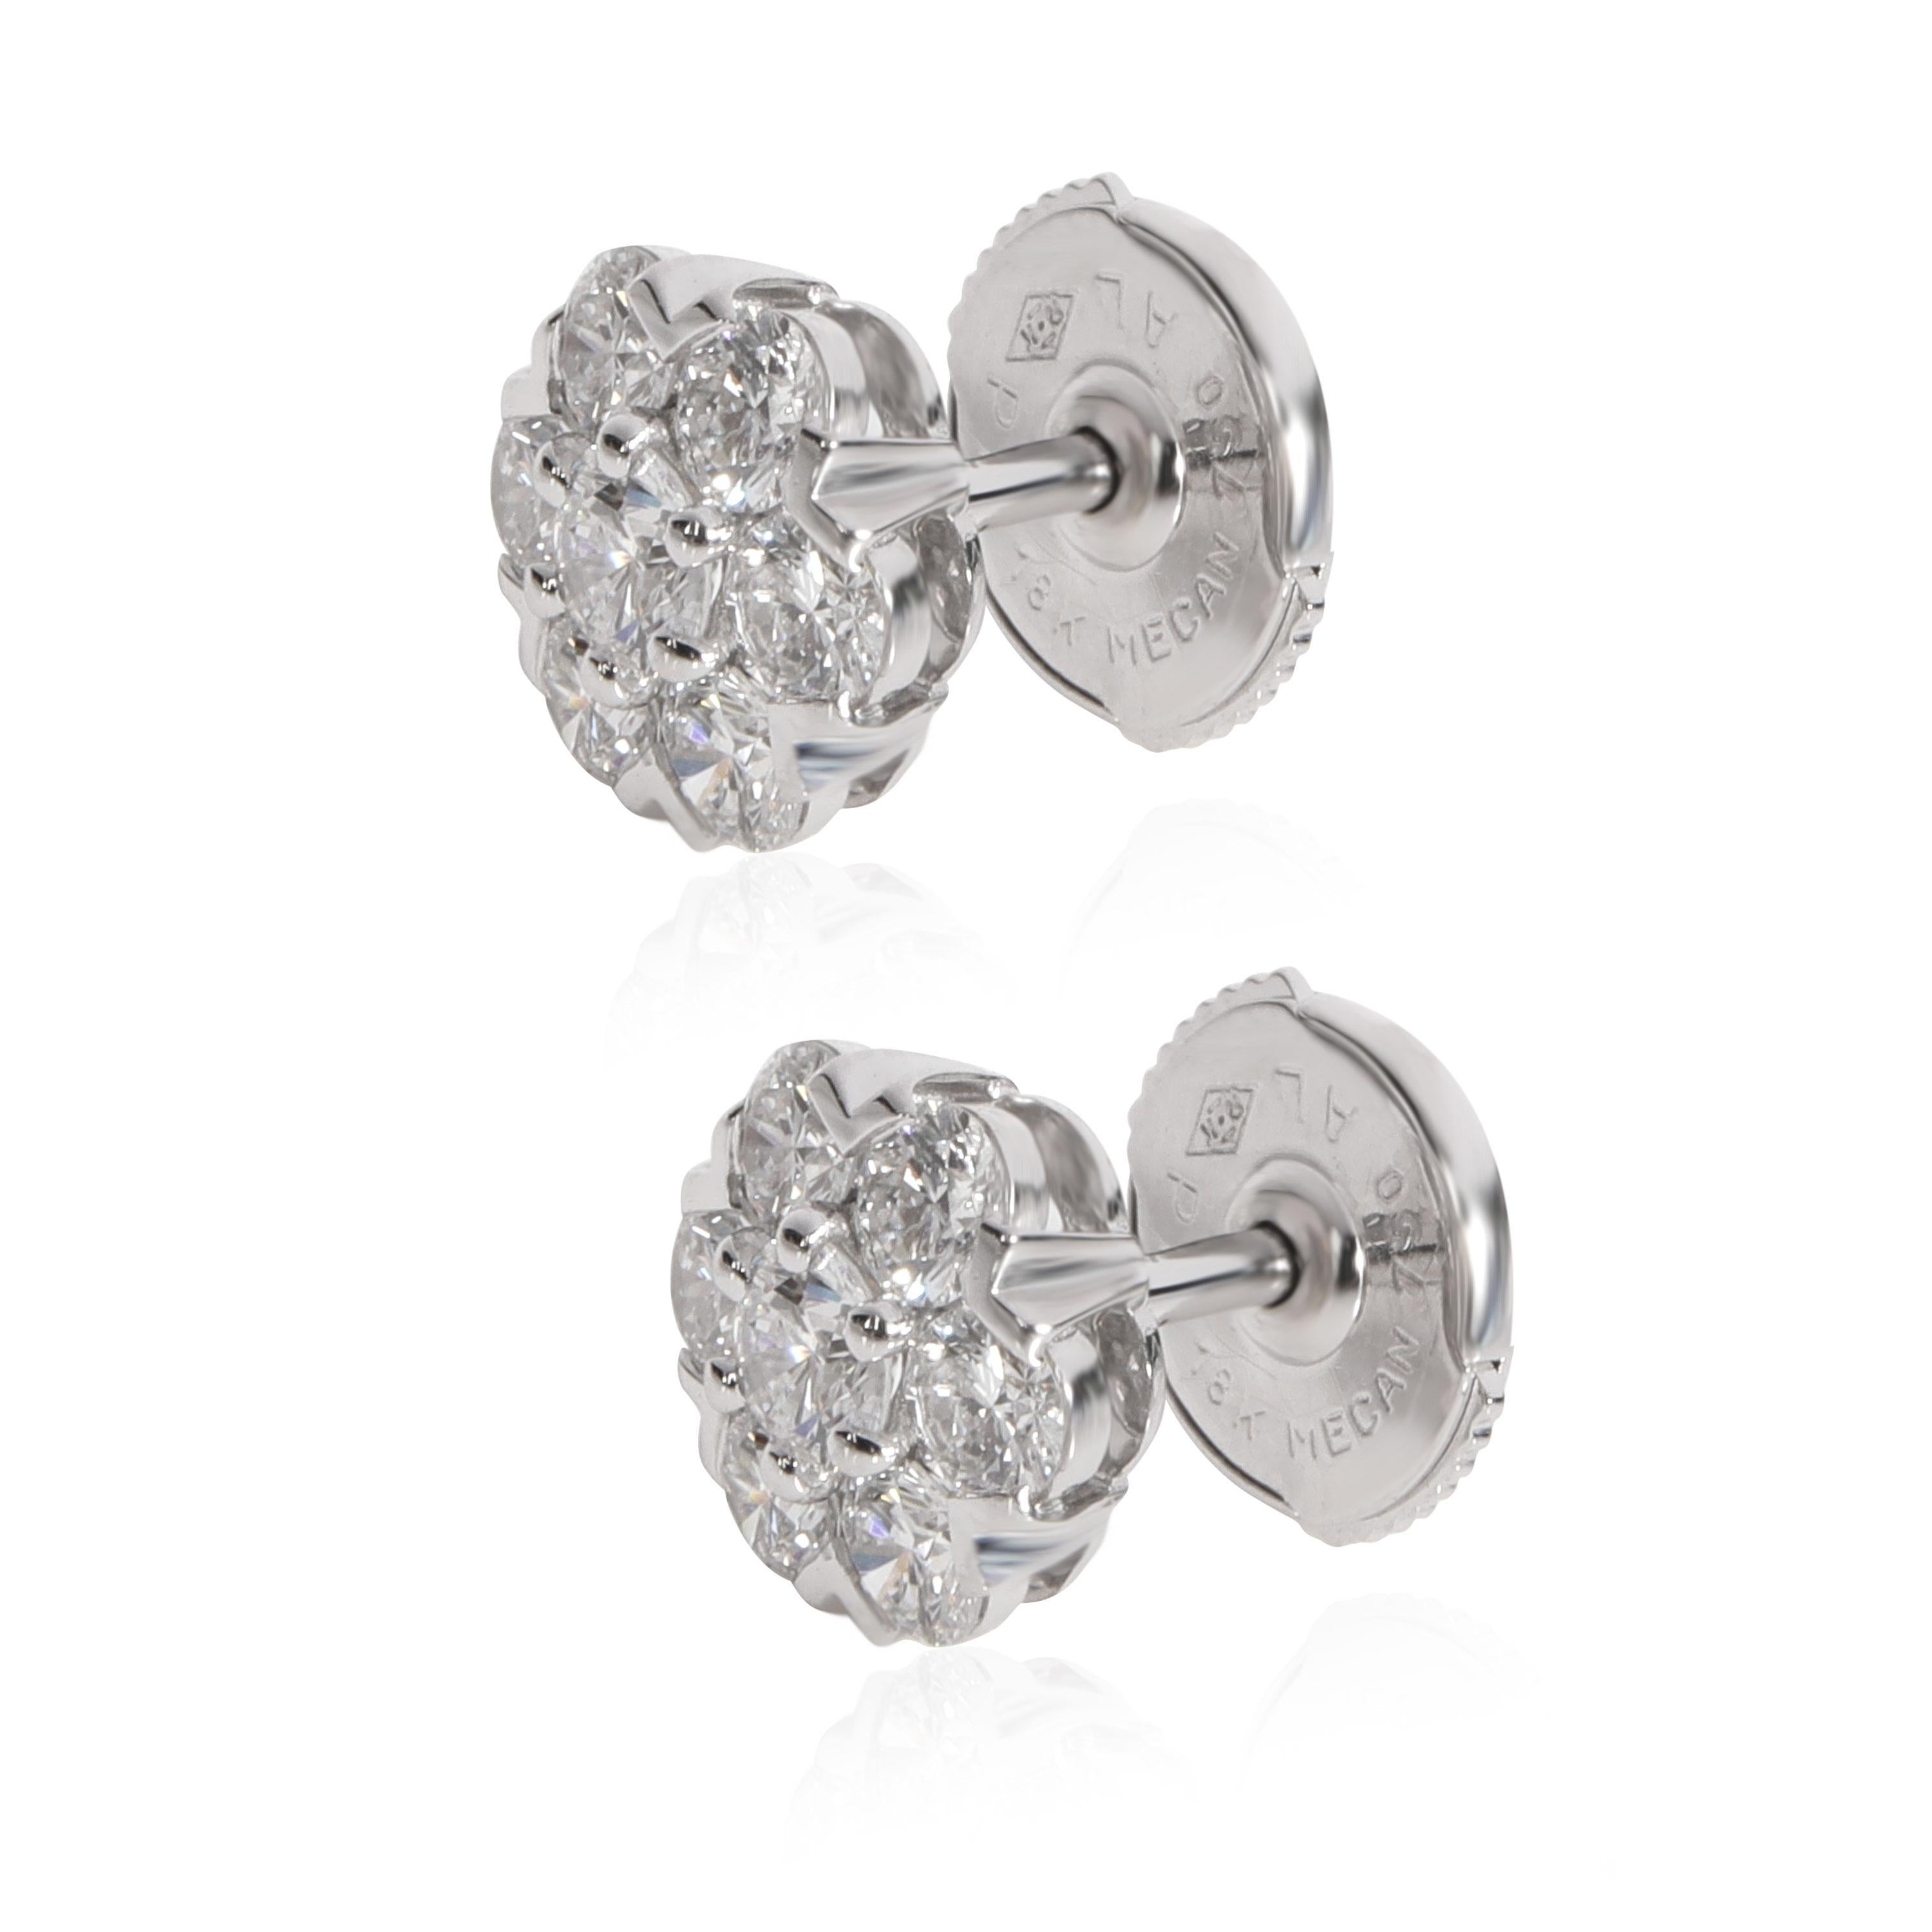 Modern Van Cleef & Arpels Fleurette Diamond Earring in 18K White Gold 1.00 CTW